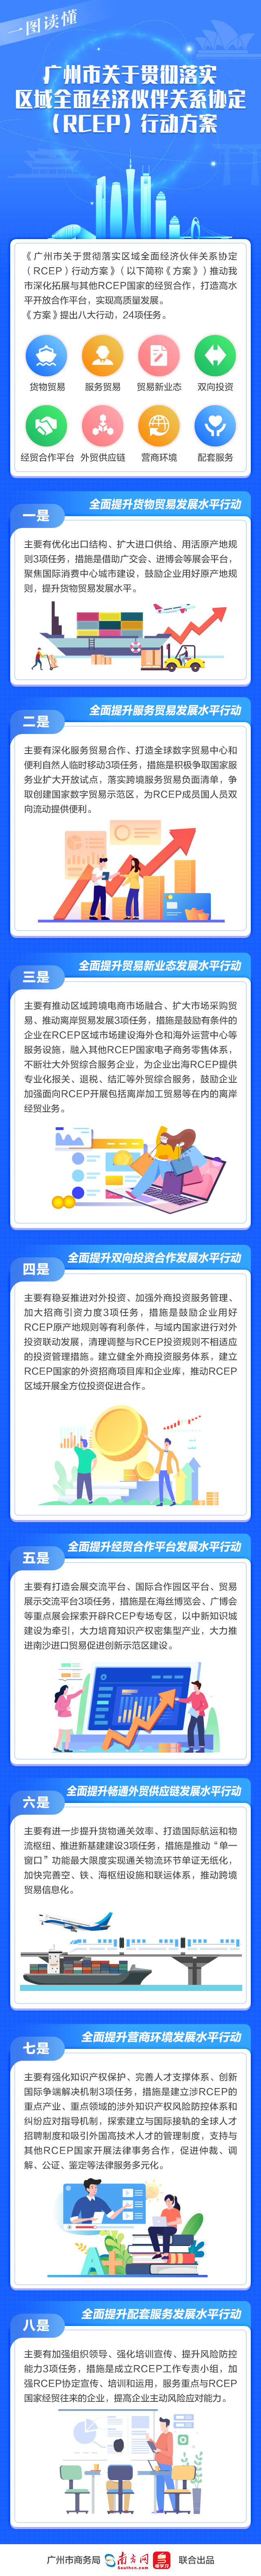 一图读懂《广州市关于贯彻落实区域全面经济伙伴关系协定（RCEP）行动方案》